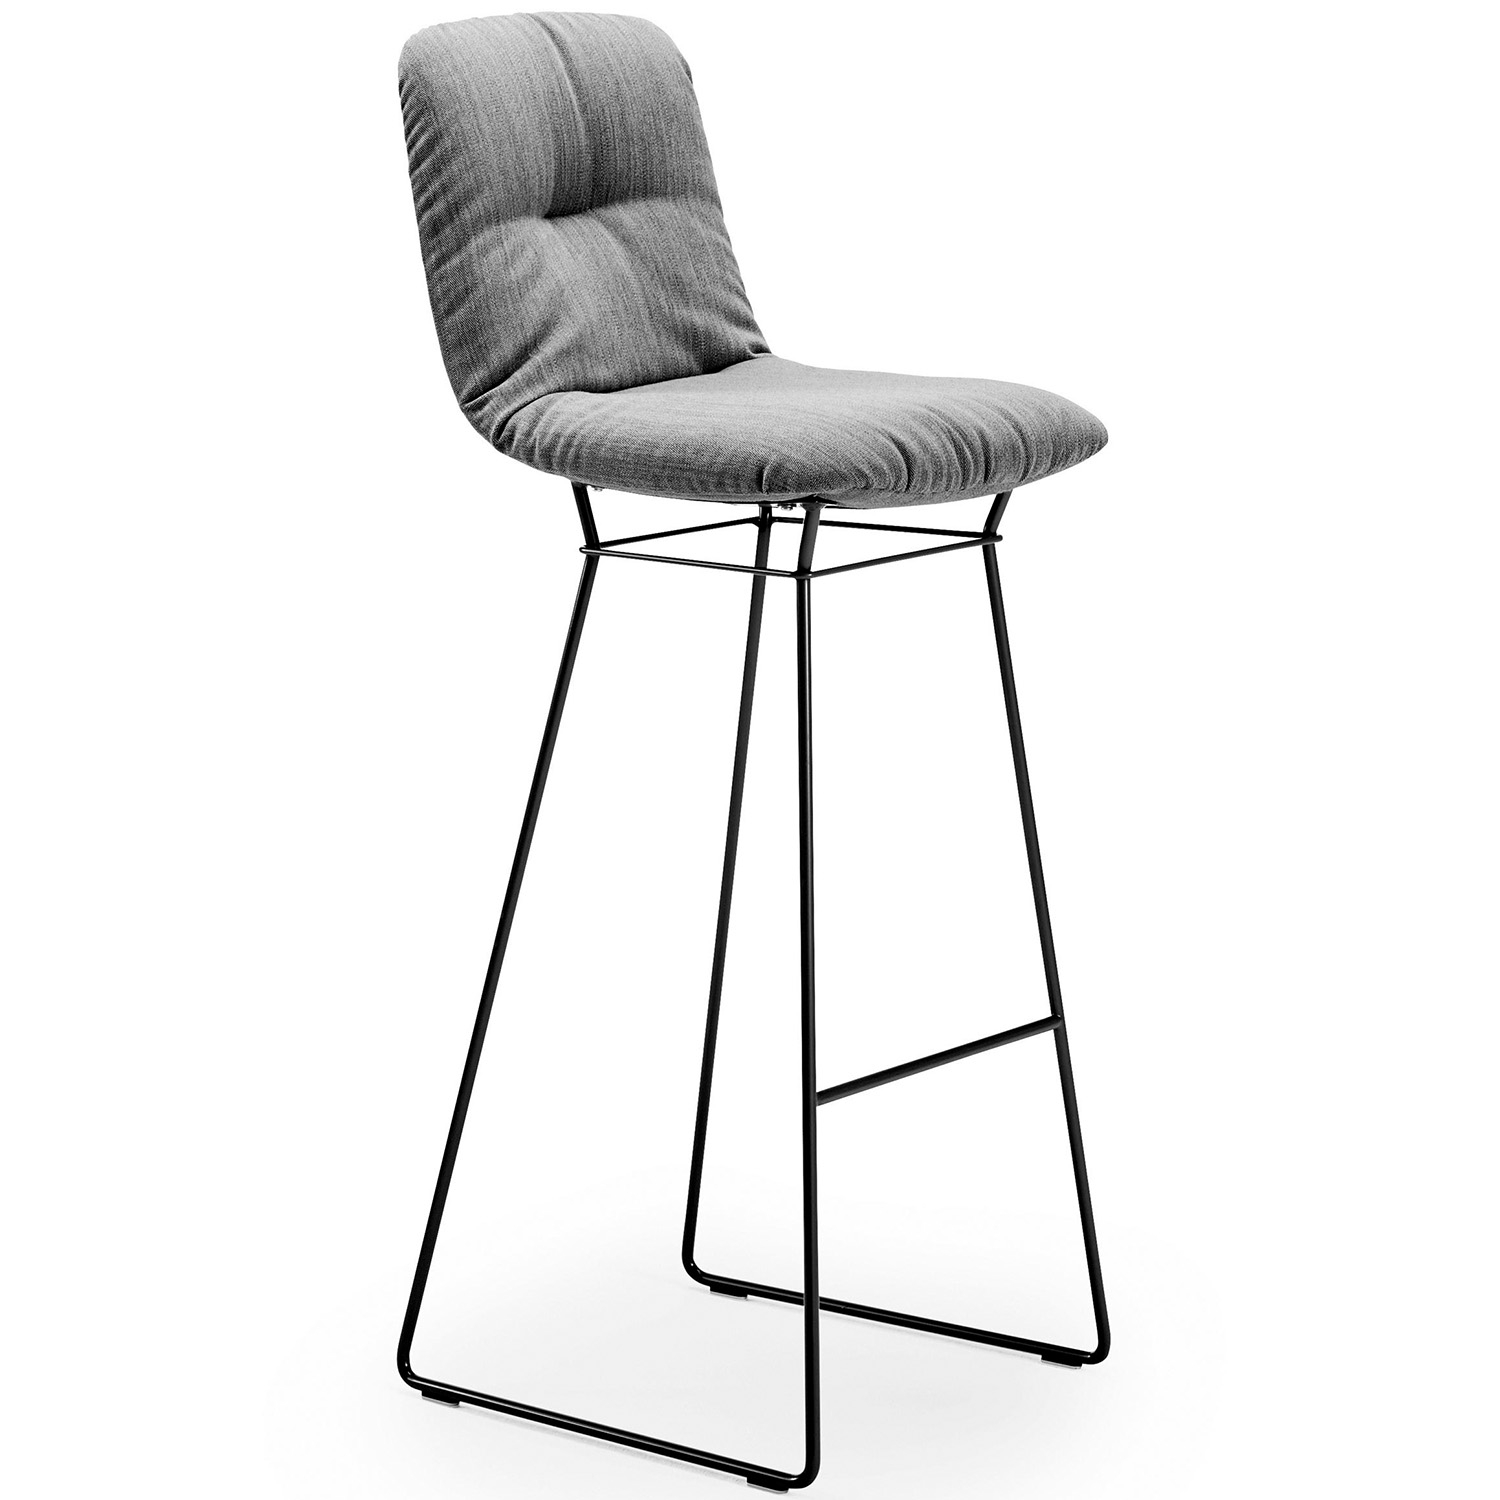 Freifrau Manufaktur designové barové židle Leya Barstool High (výška sedáku 82 cm)